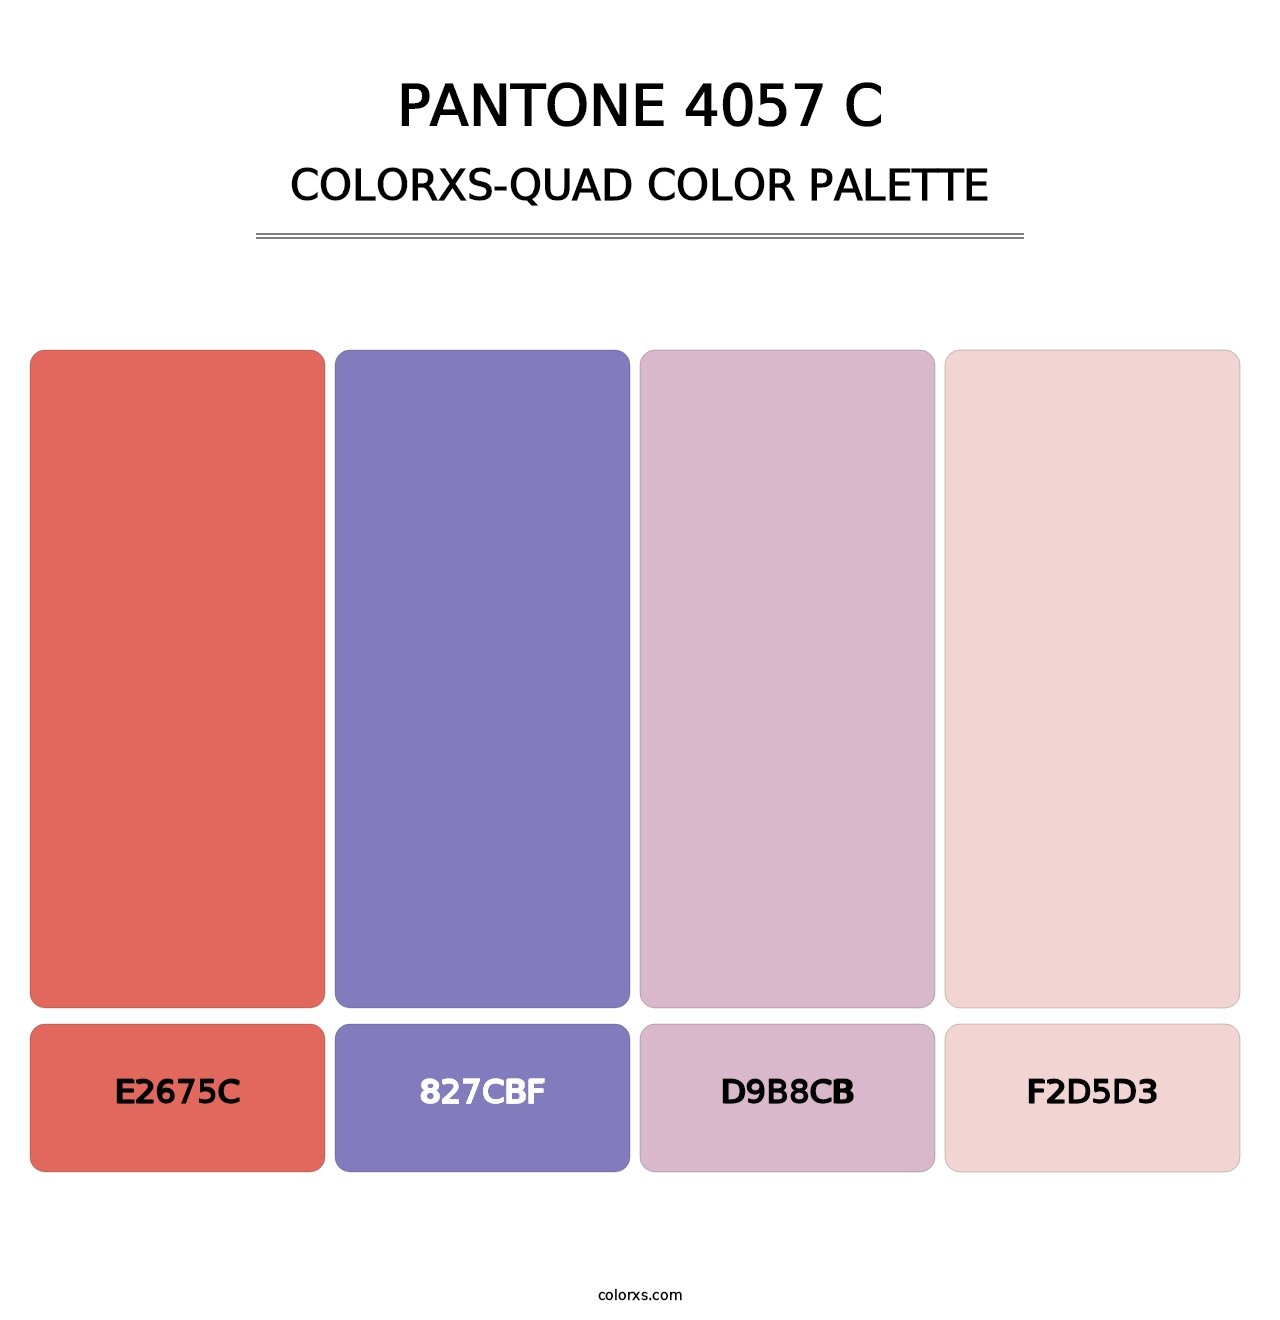 PANTONE 4057 C - Colorxs Quad Palette